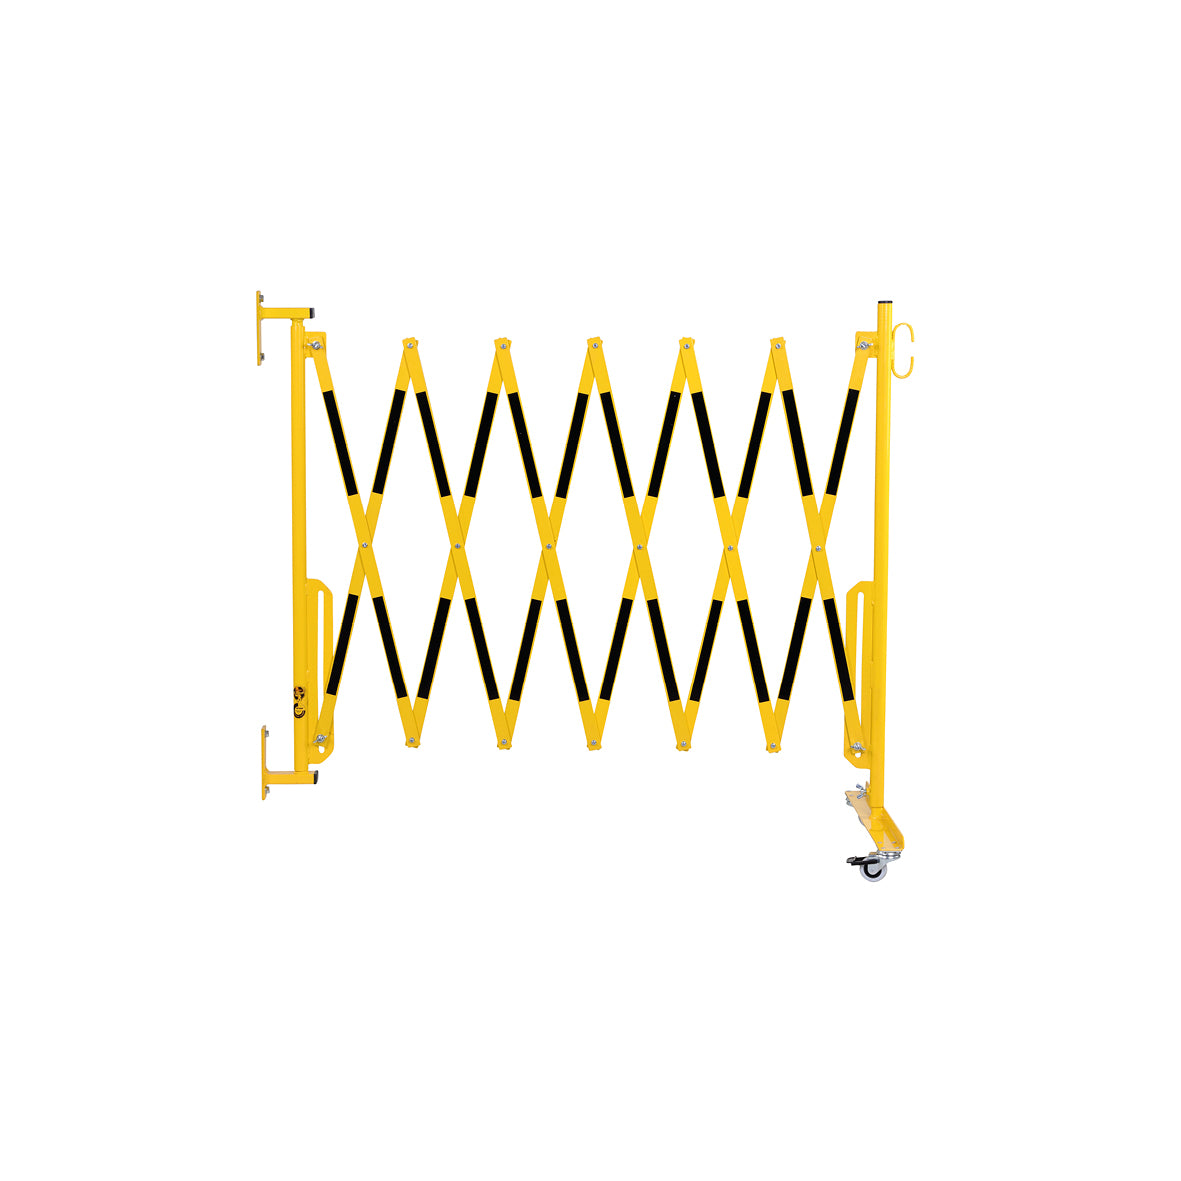 Scherensperre mit Rollen und Wandbefestigung, Stahl, gelb-schwarz lackiert, Max. Breite 3.6 m. Gewicht: 12 kg, B/H/T: 380 x 950 x 450 mm, zusammengeklappt